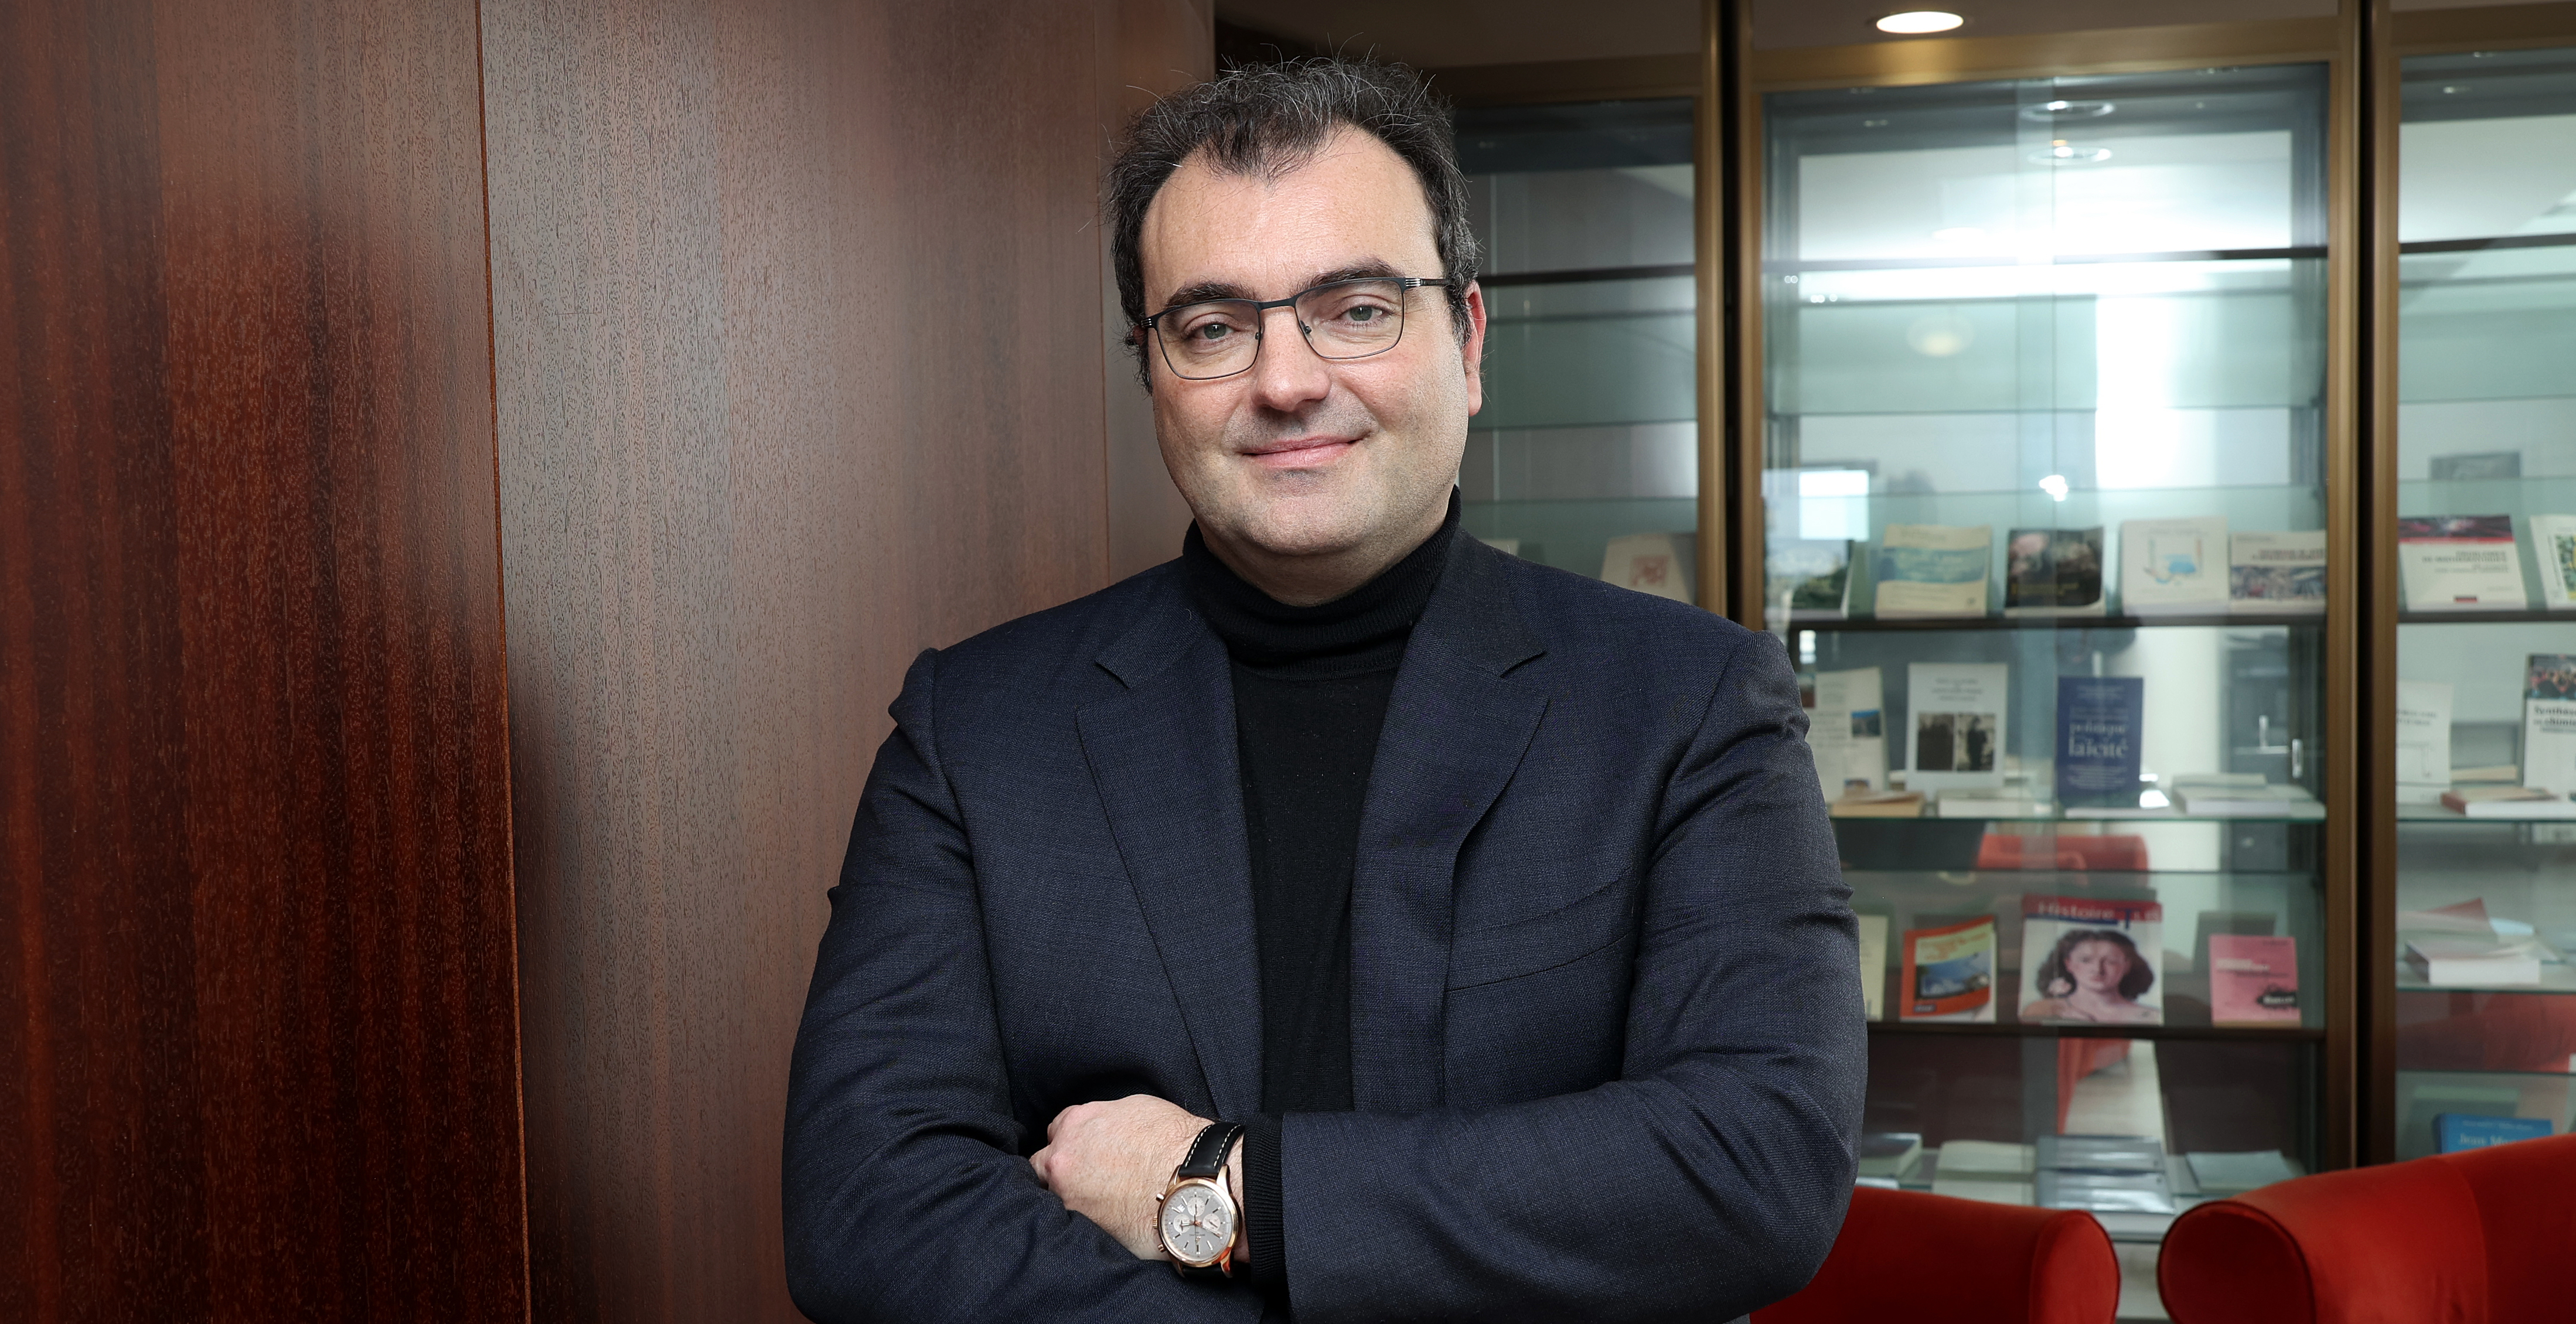 Laurent Gatineau, president of CY Cergy Paris Université